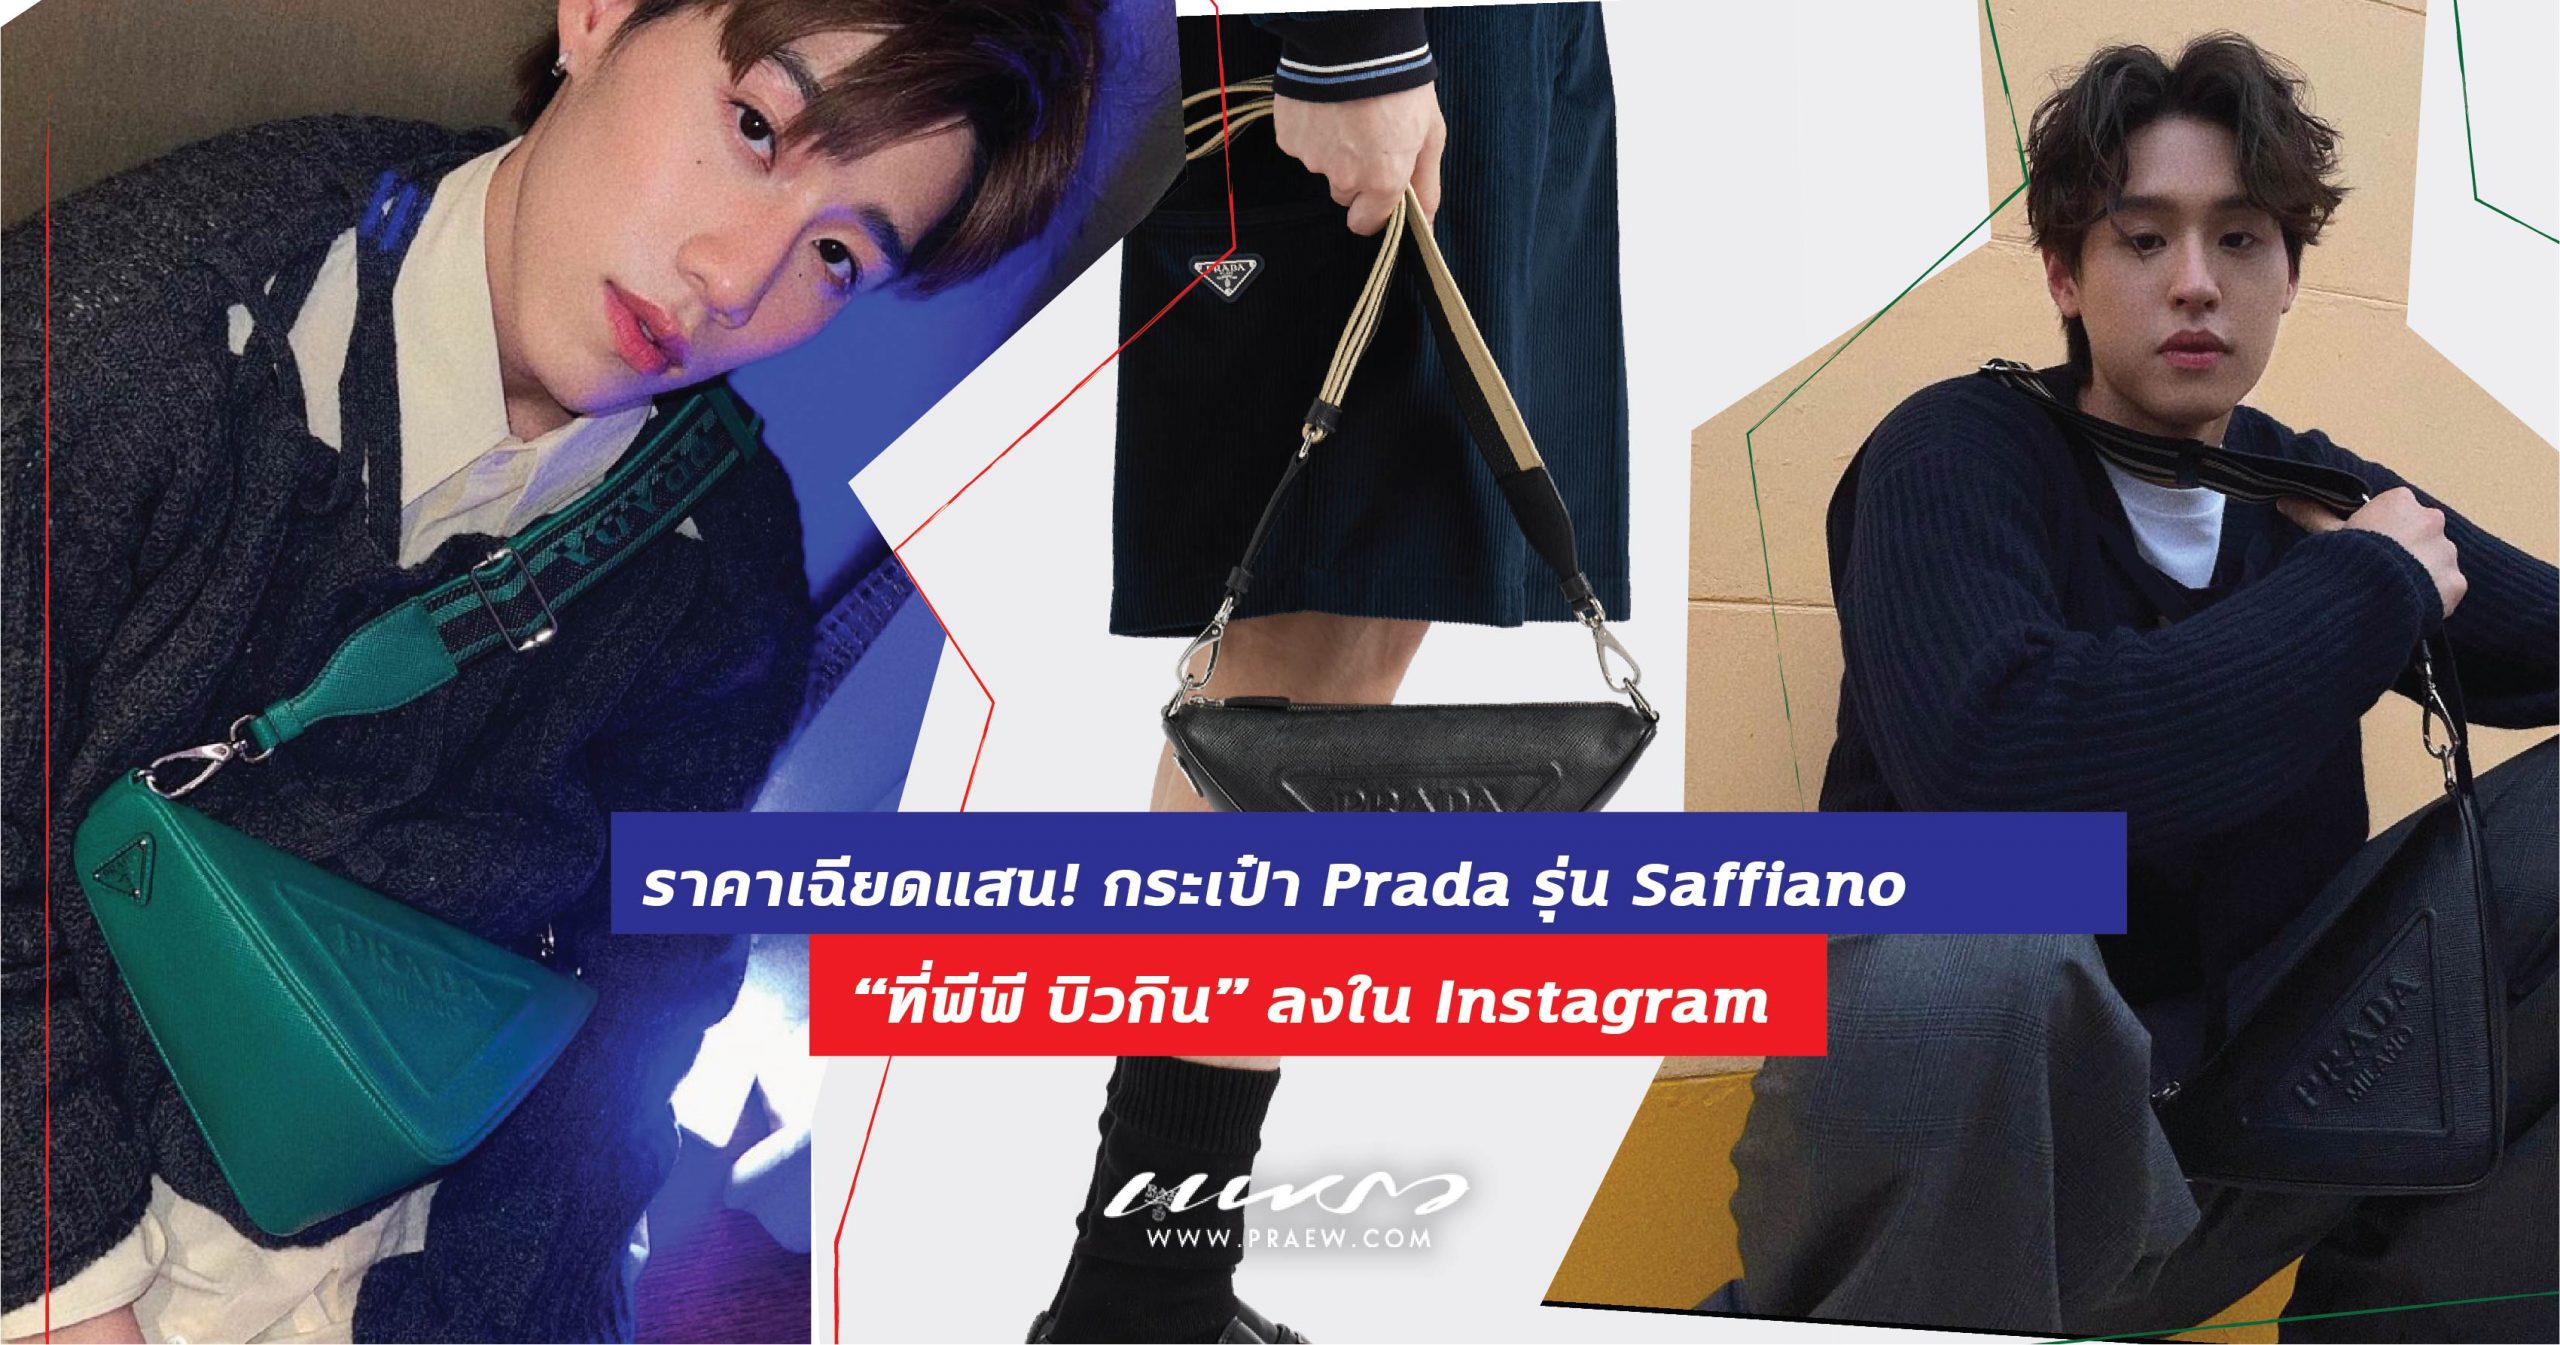 ราคาเฉียดแสน! กระเป๋า Prada รุ่น Saffiano ที่พีพี บิวกิน ลงใน Instagram